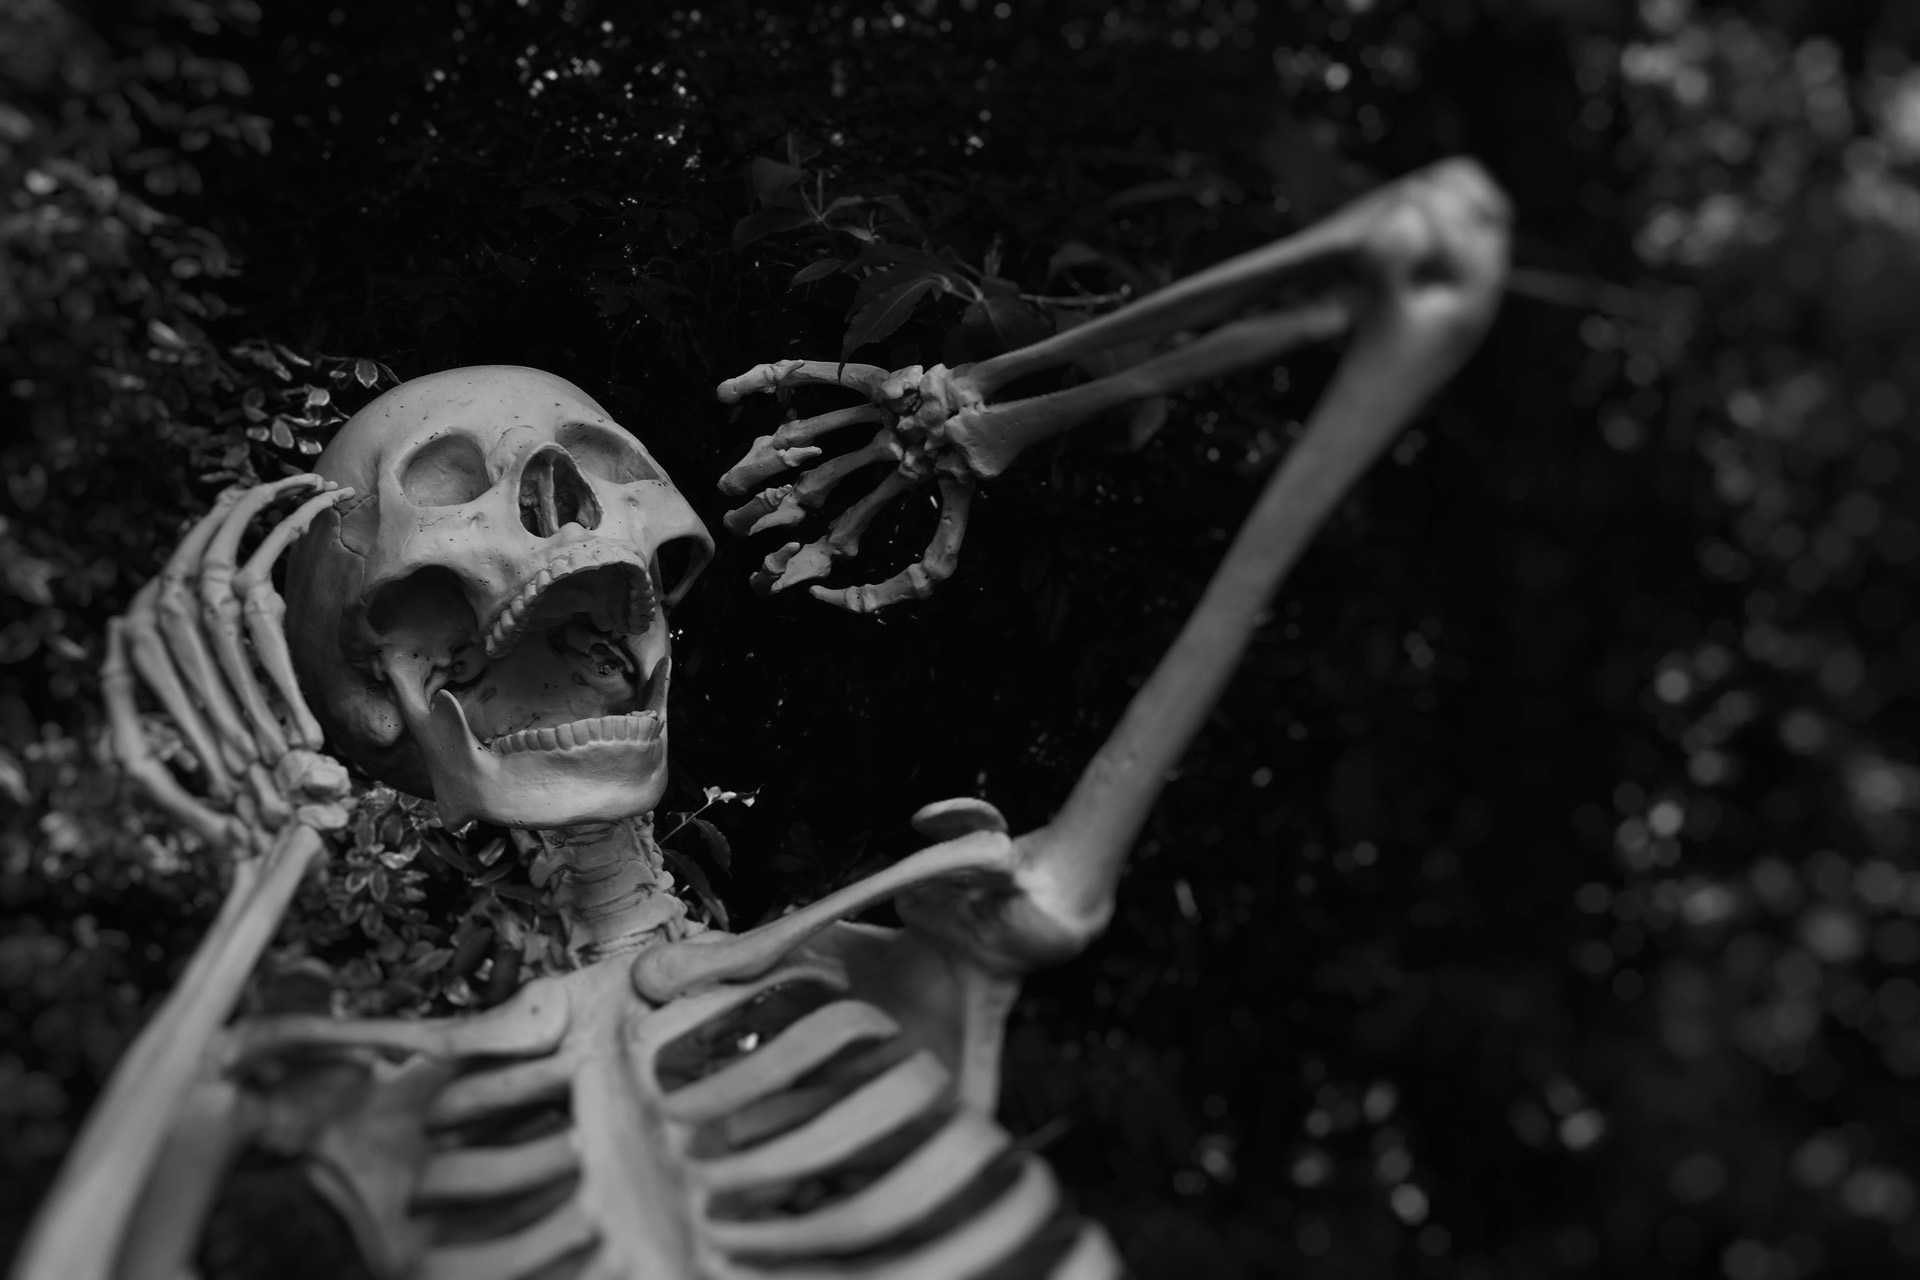 A Halloween skeleton